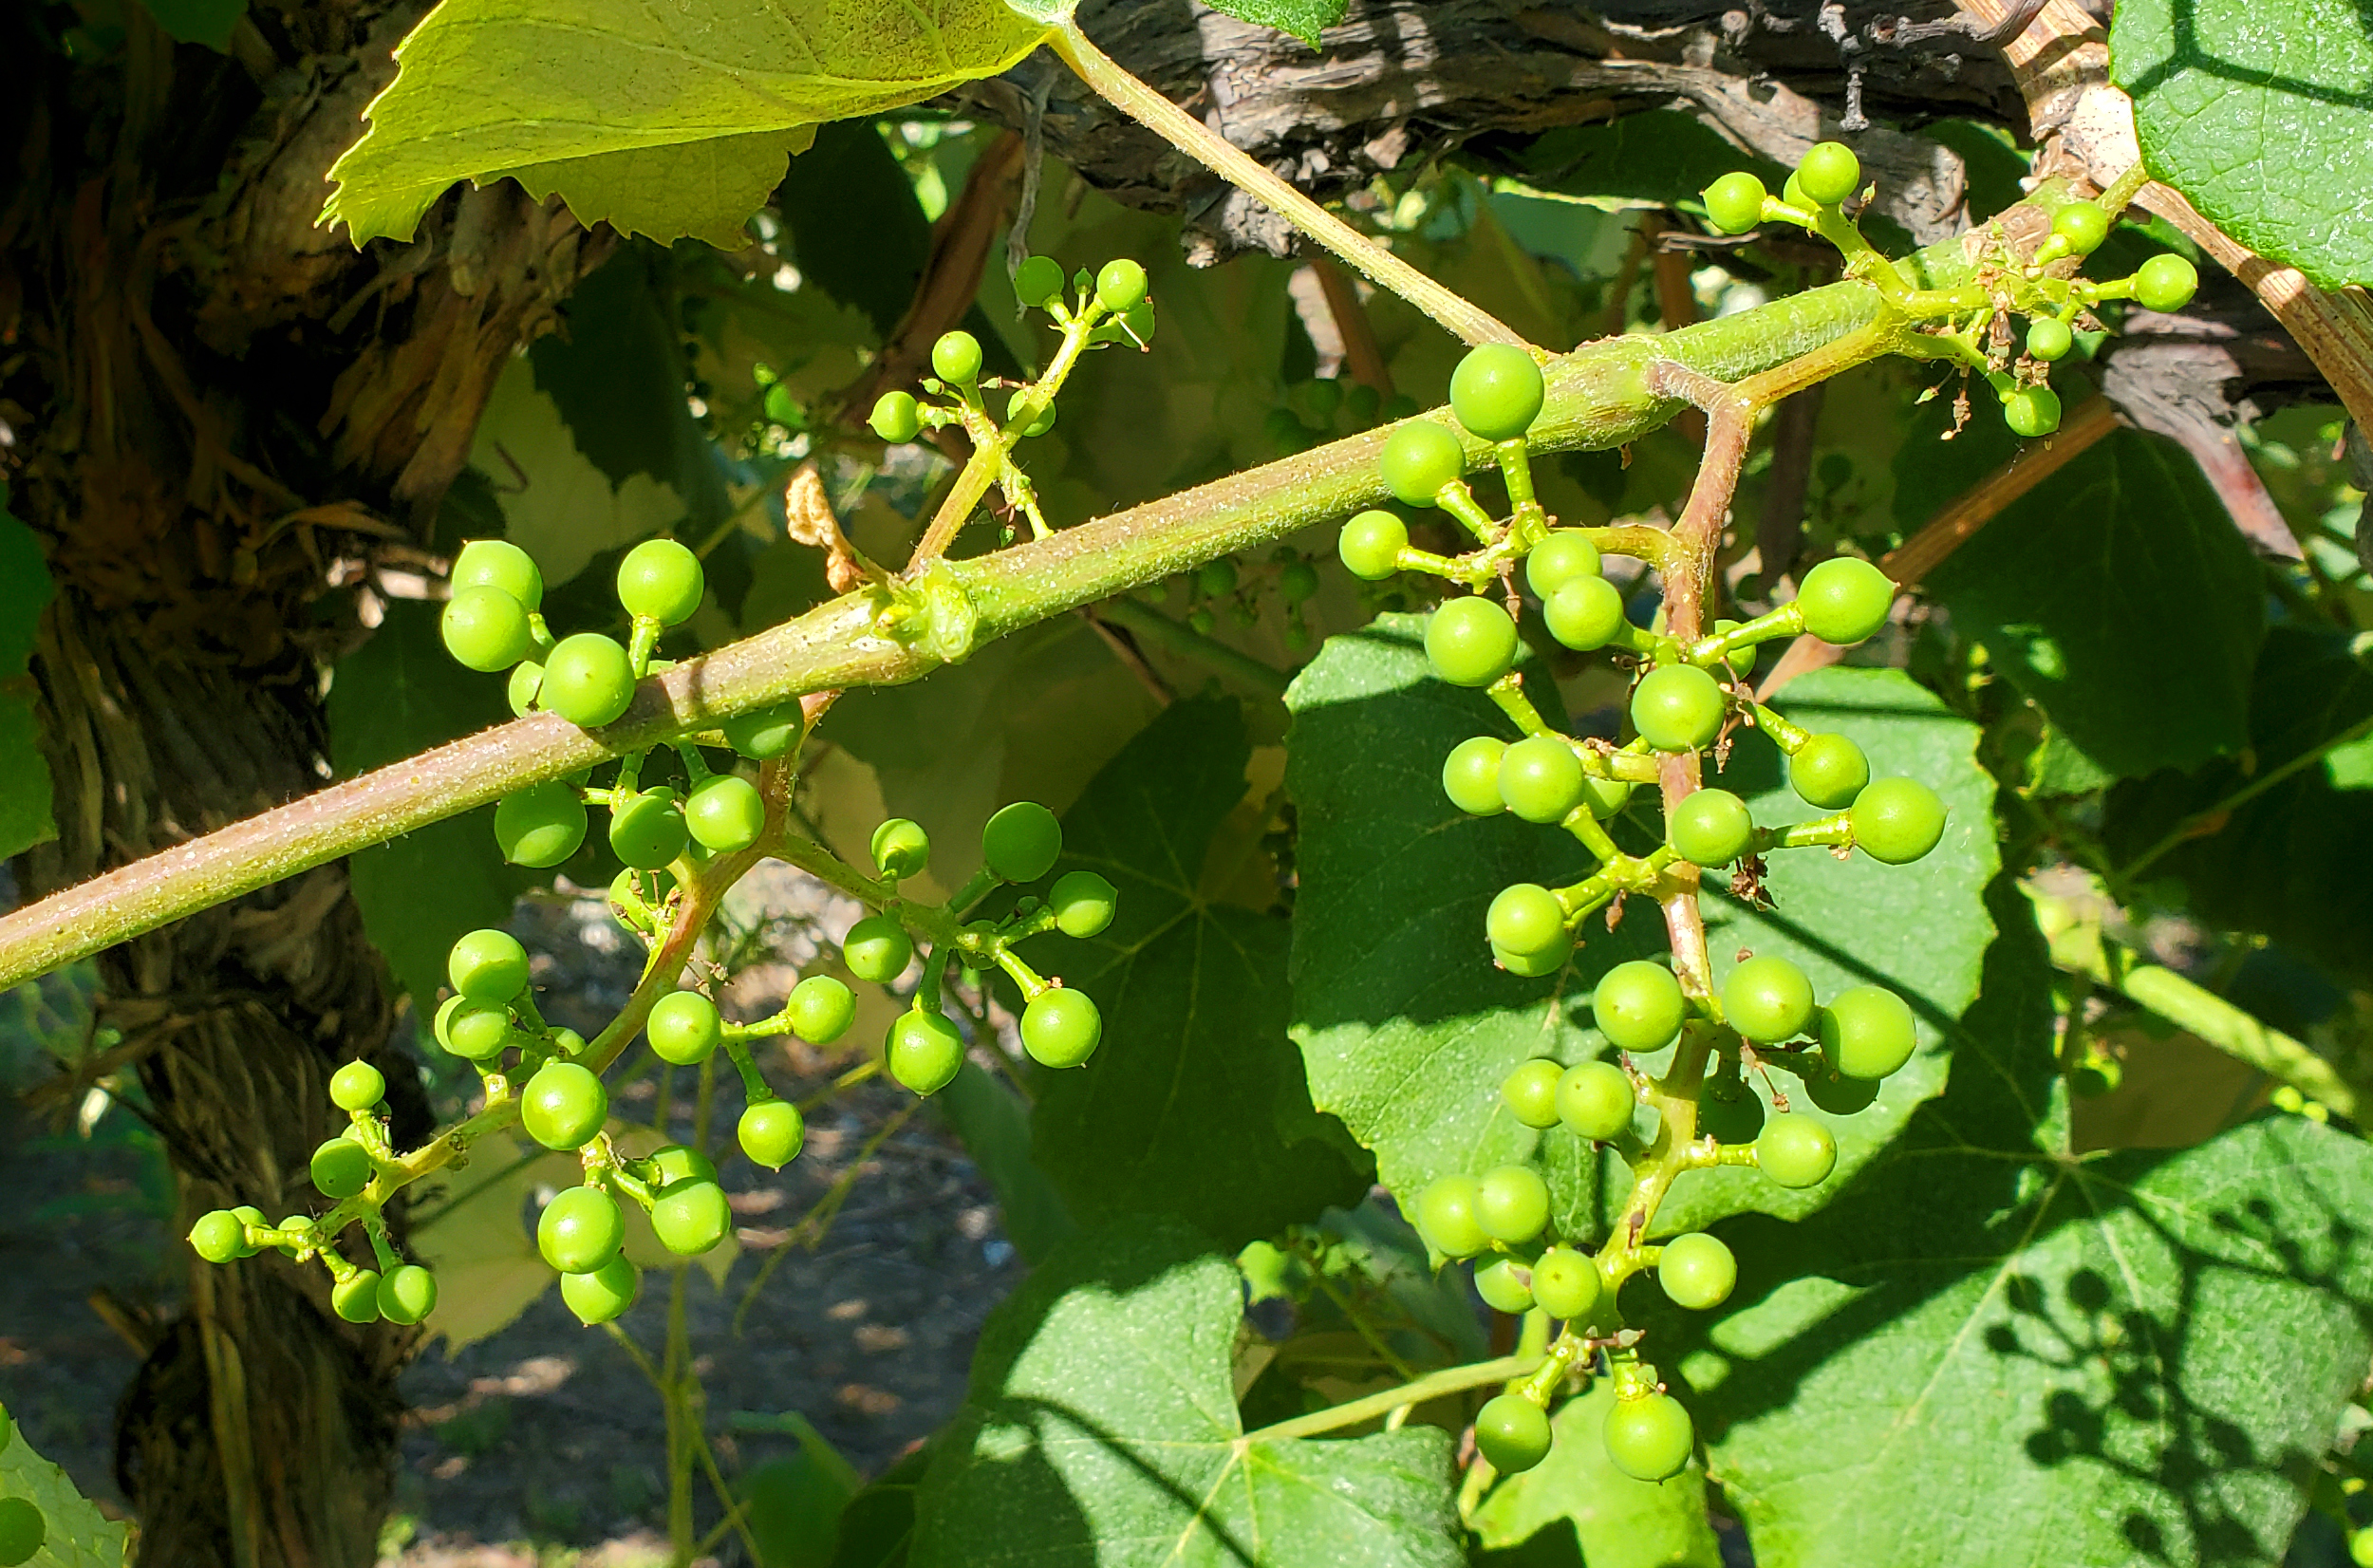 Concord grapes